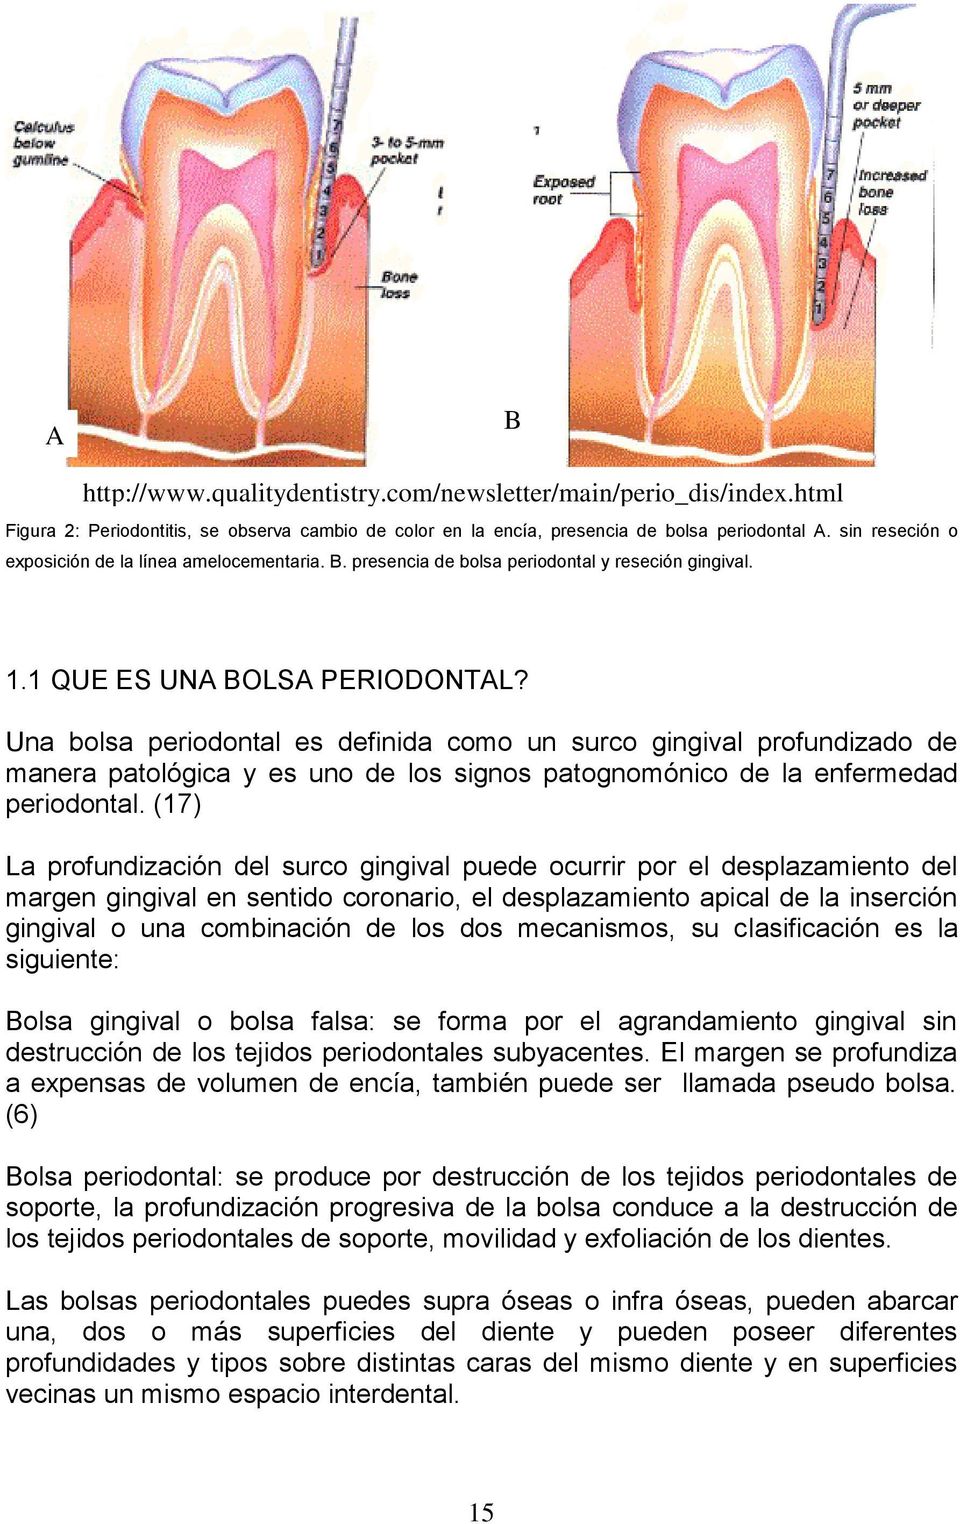 Una bolsa periodontal es definida como un surco gingival profundizado de manera patológica y es uno de los signos patognomónico de la enfermedad periodontal.